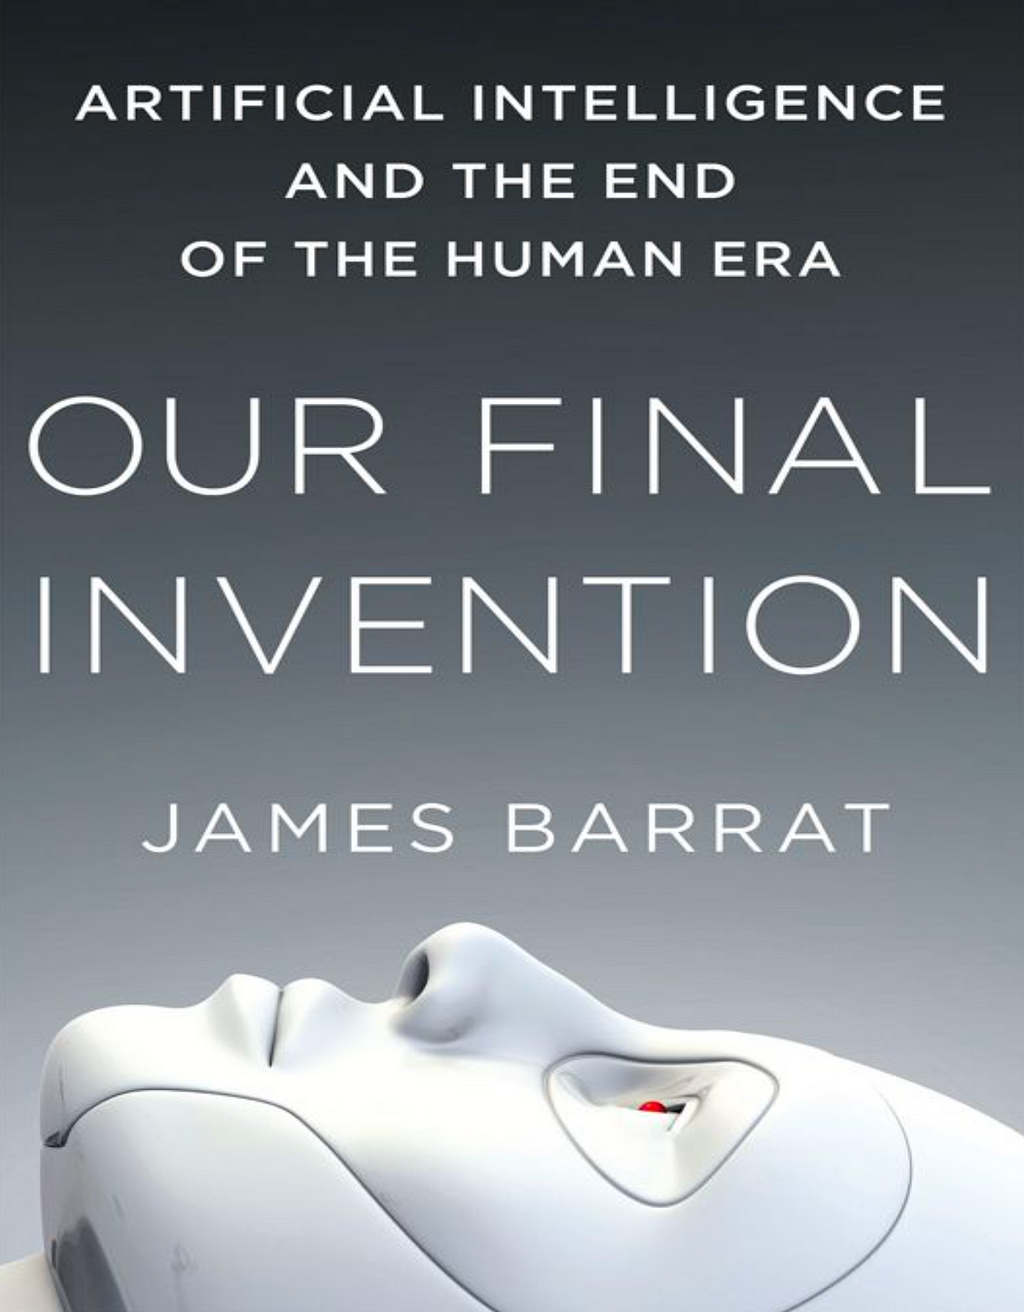 Portada del libro de James Barrat “Our Final Invention”